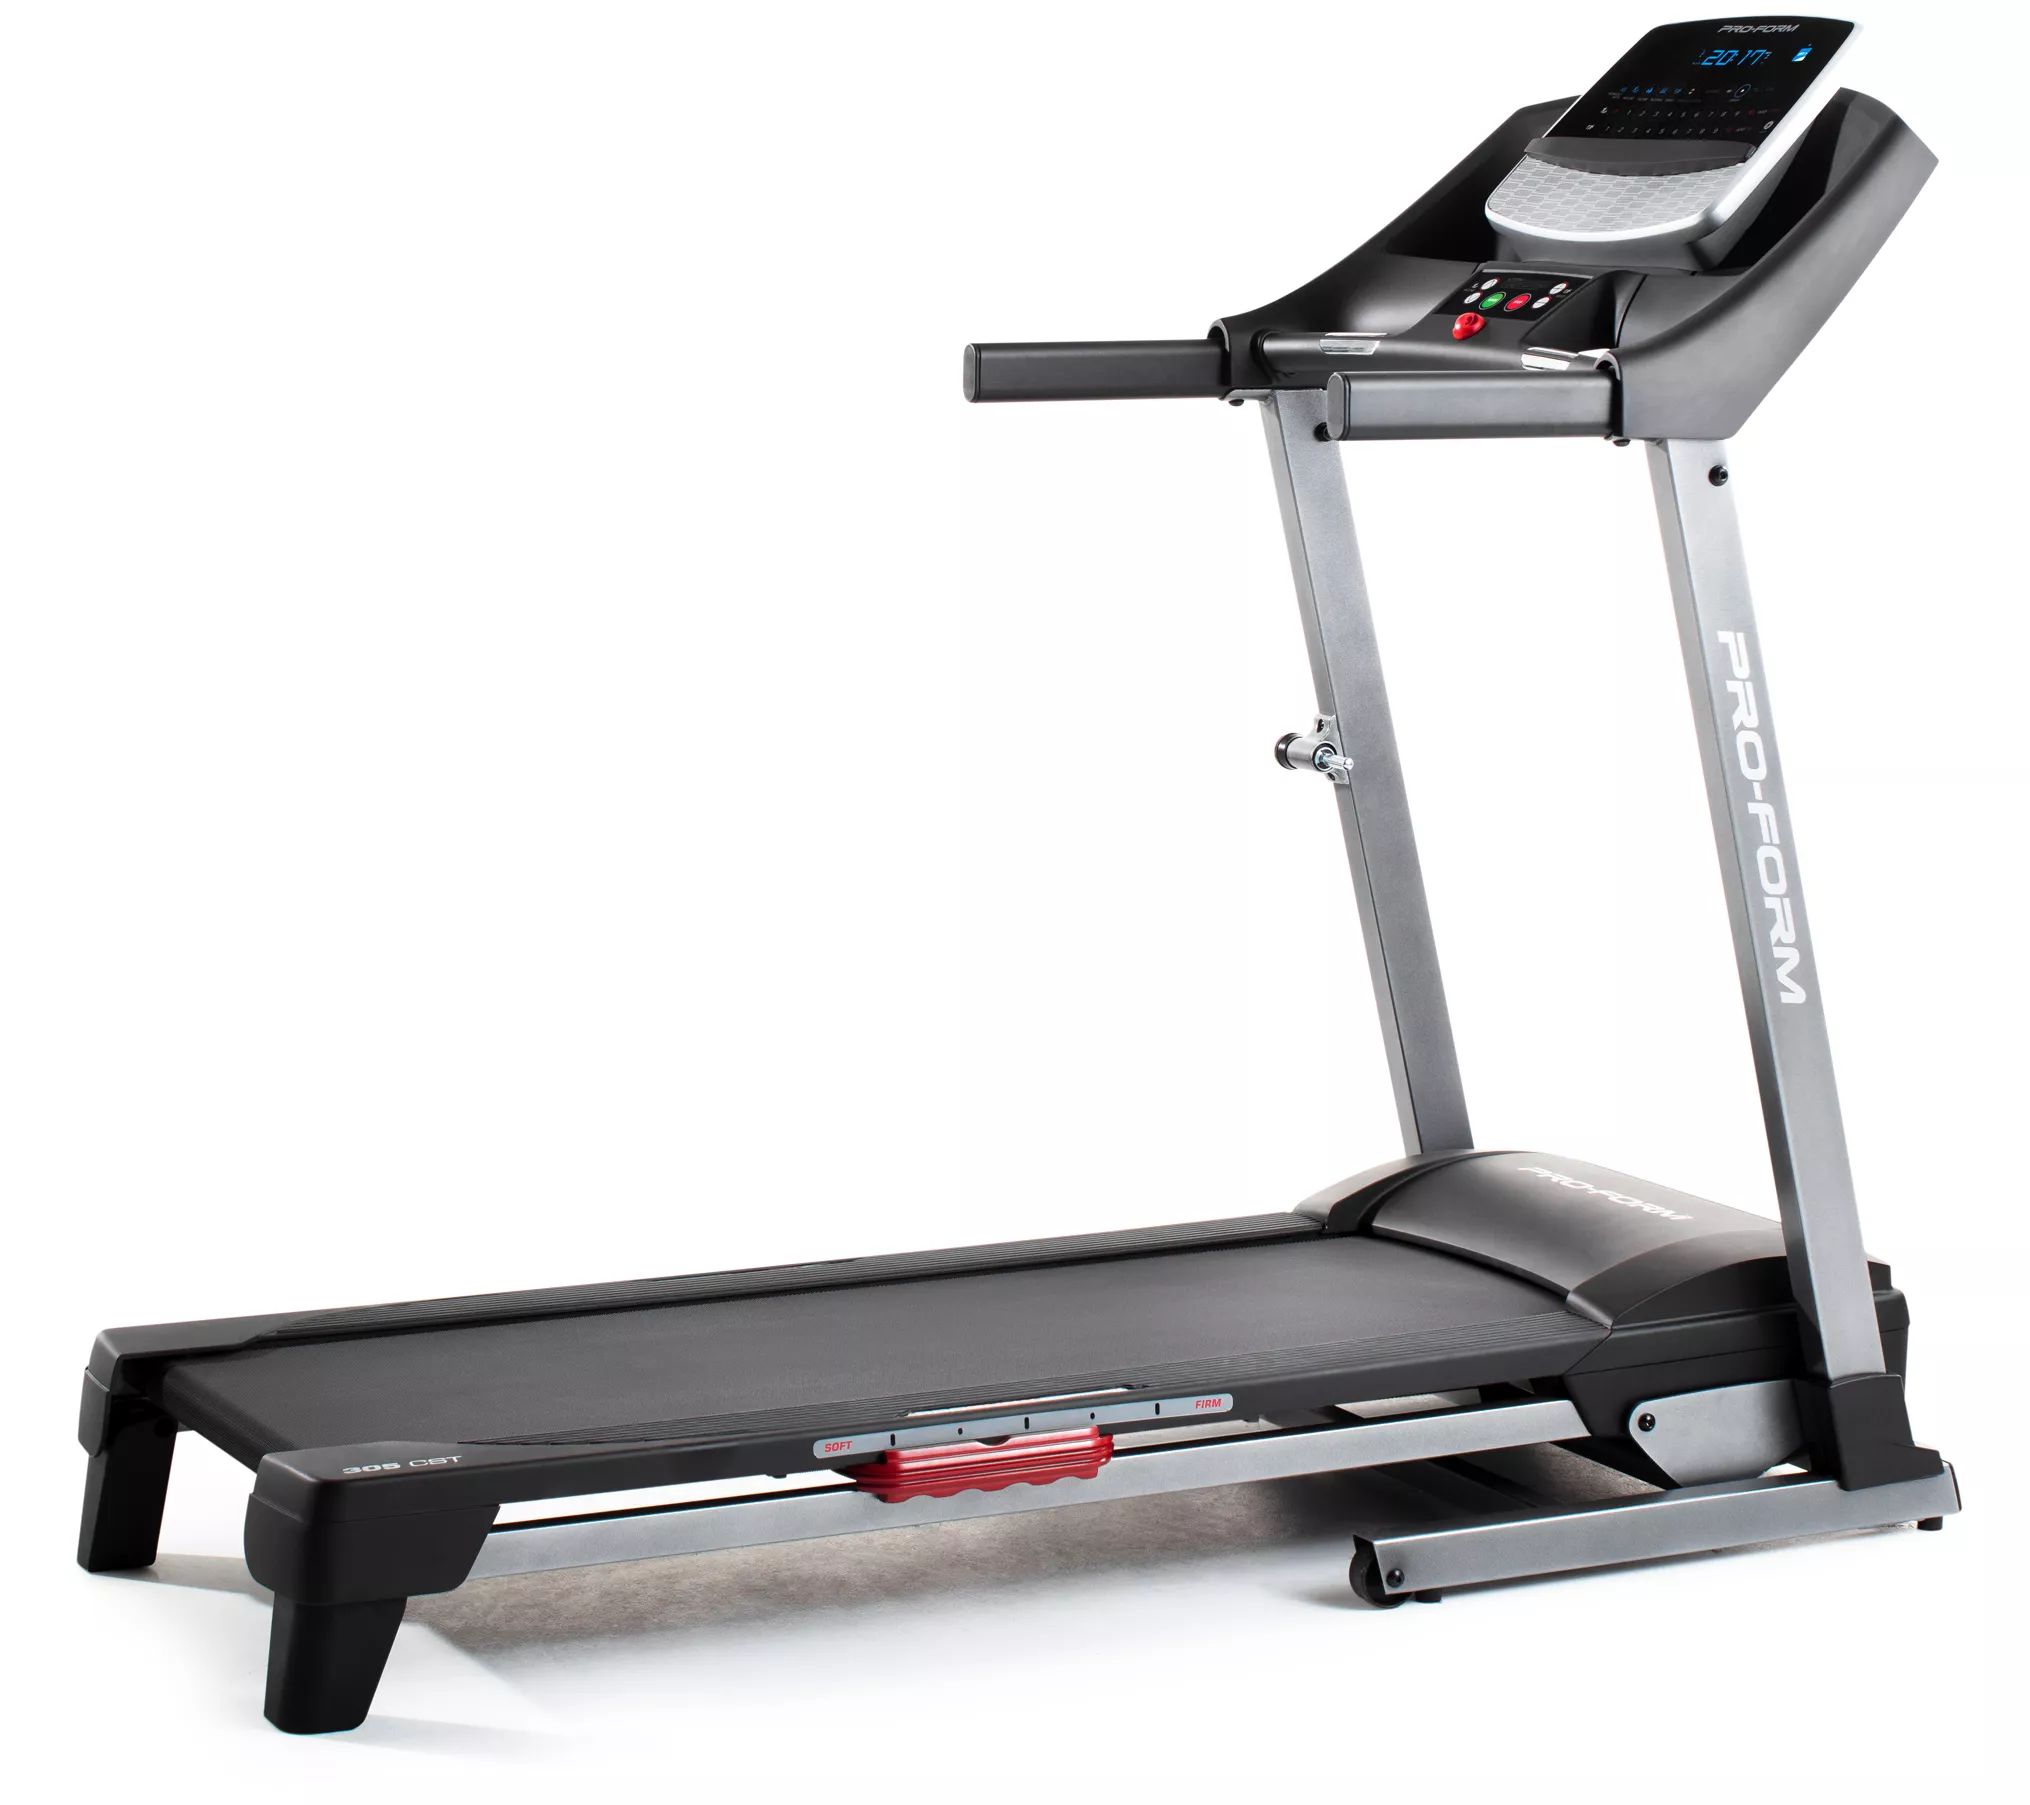 PROFROM 305 CST Folding Treadmill, iFit CoachCompatible - QVC.com | QVC